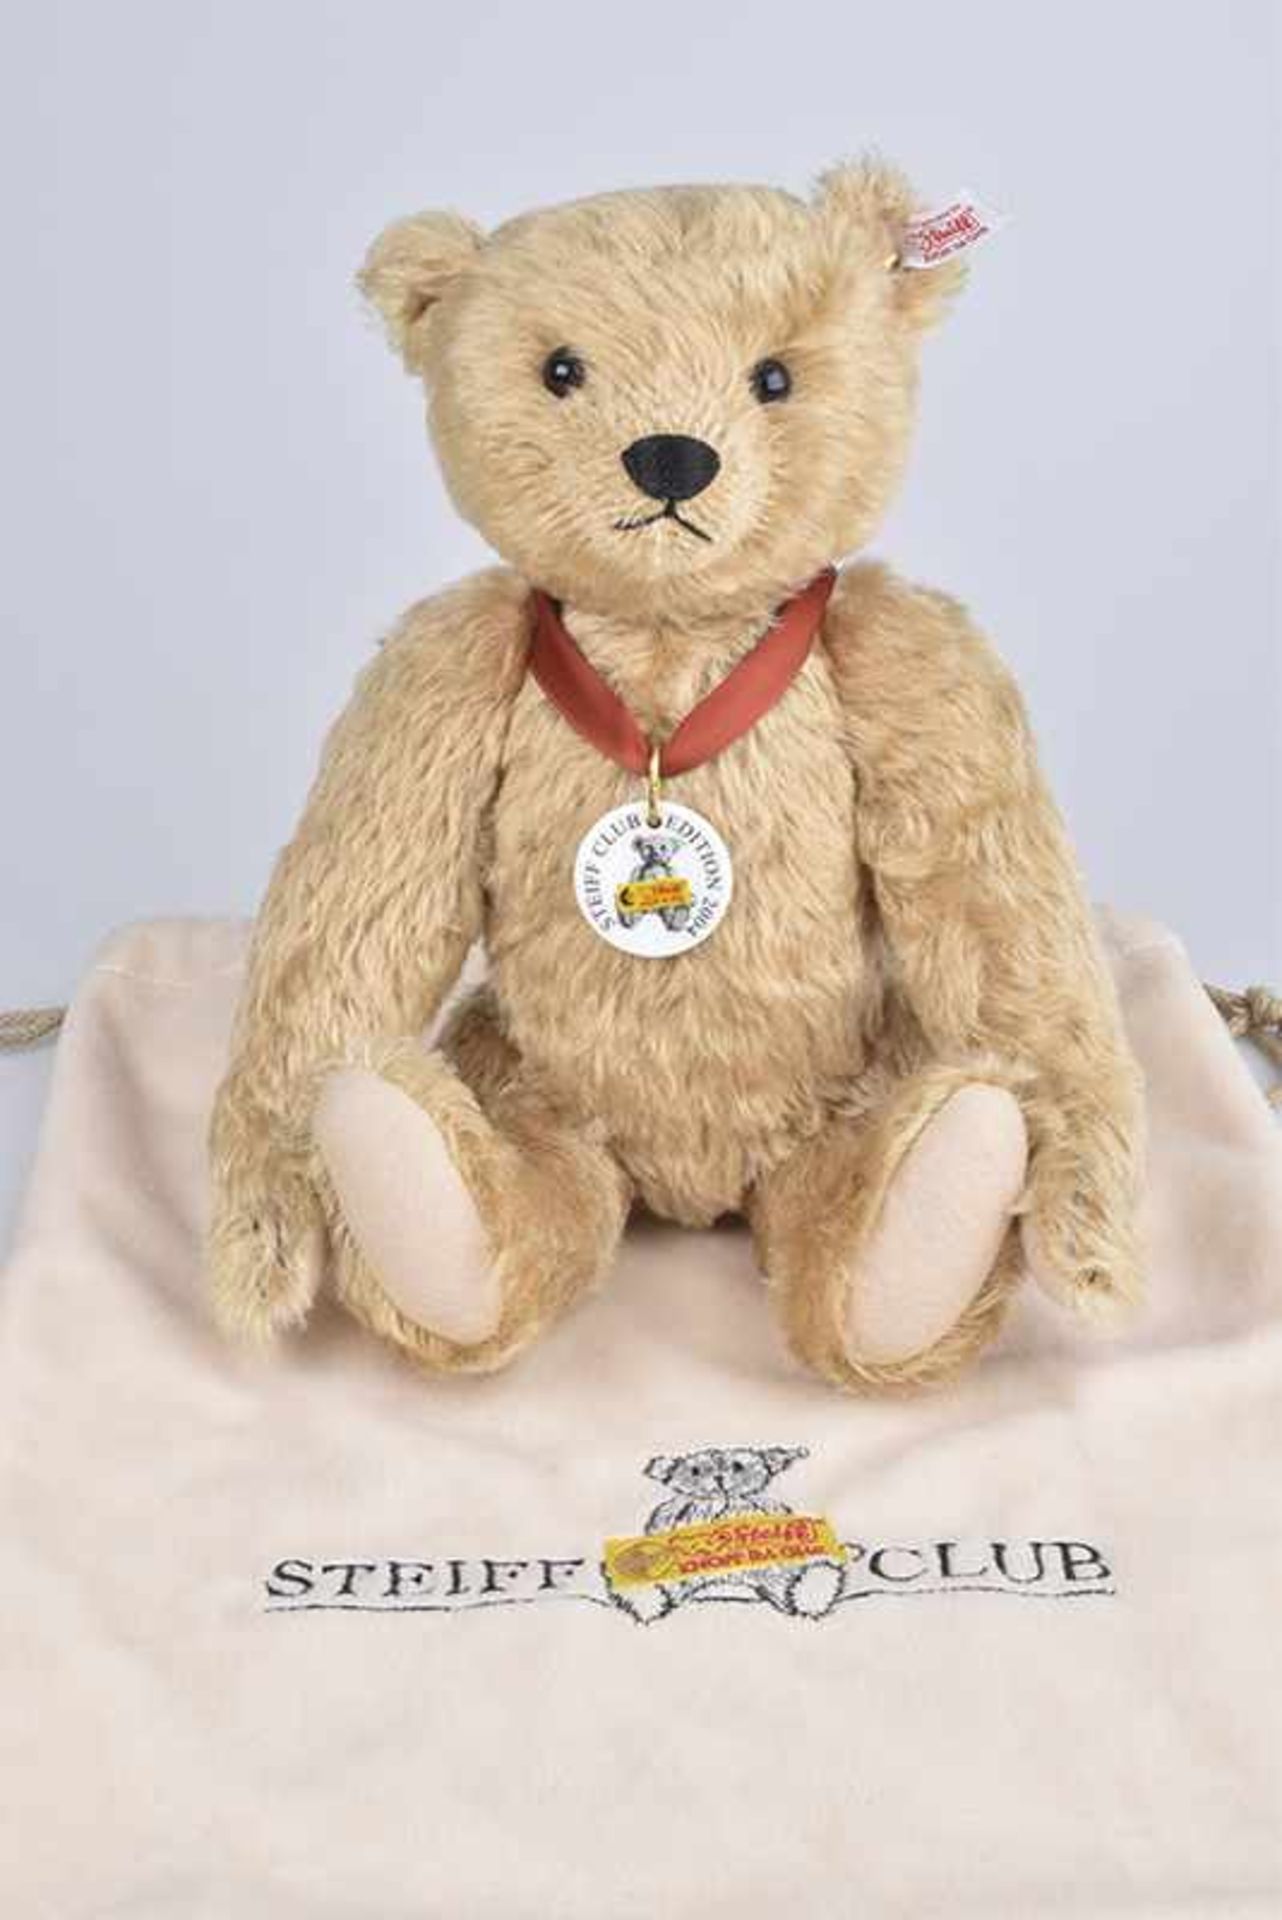 STEIFF Teddybär "Franz", limitierte Auflage, mit Zertifikat, KF, Porzellanmarke, Nr. 420405, Mohair,